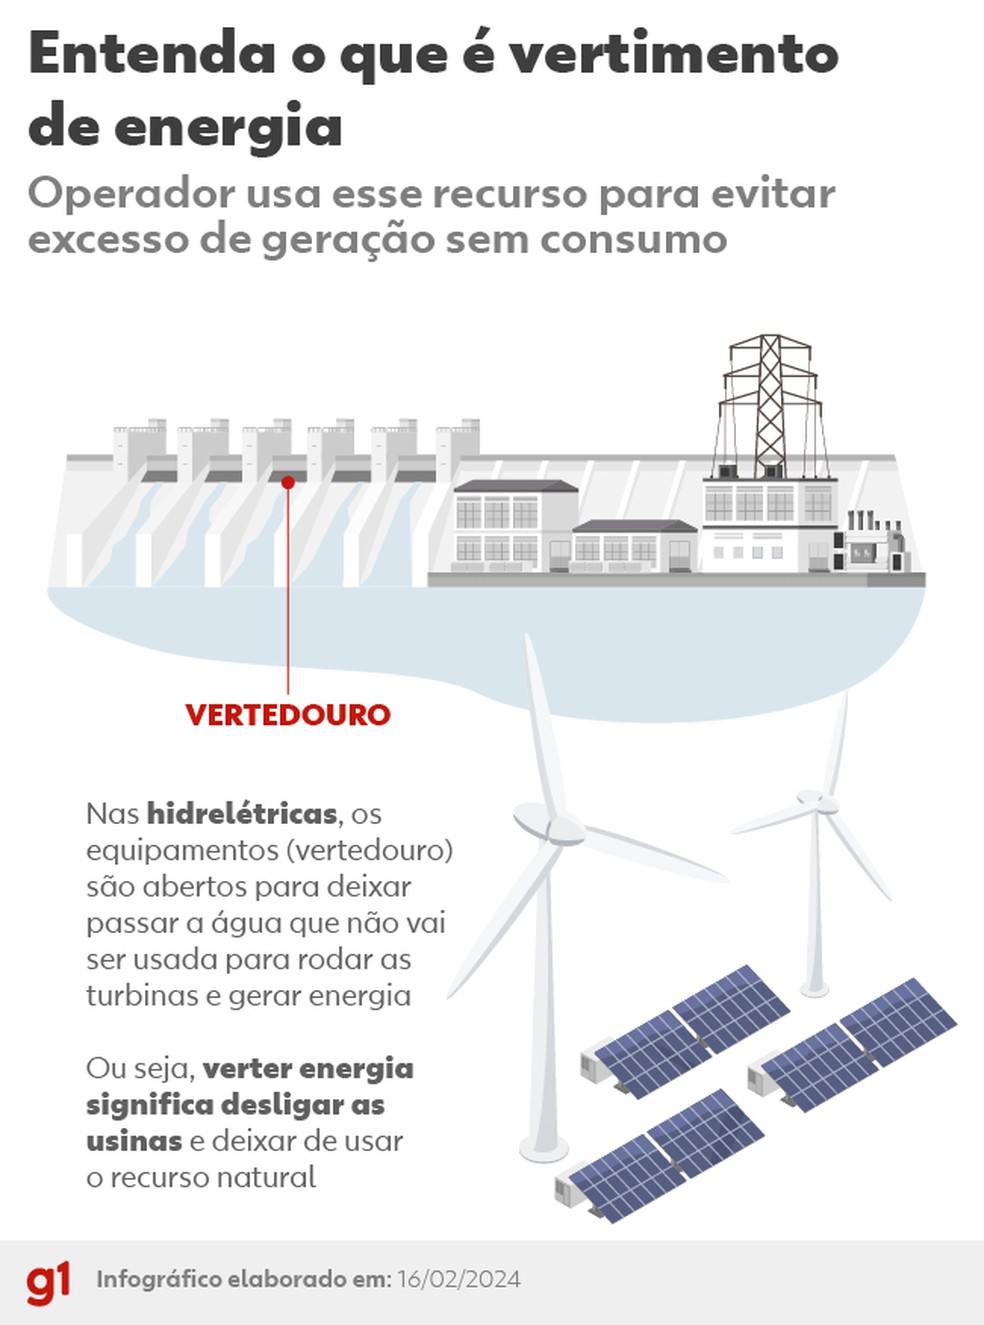 Enel Clientes Brasil - ⚡️ Estágio Enel Brasil: chegou a hora de conectar a  sua energia com a nossa! Já pensou em ser parte do time que lidera a  transição energética e